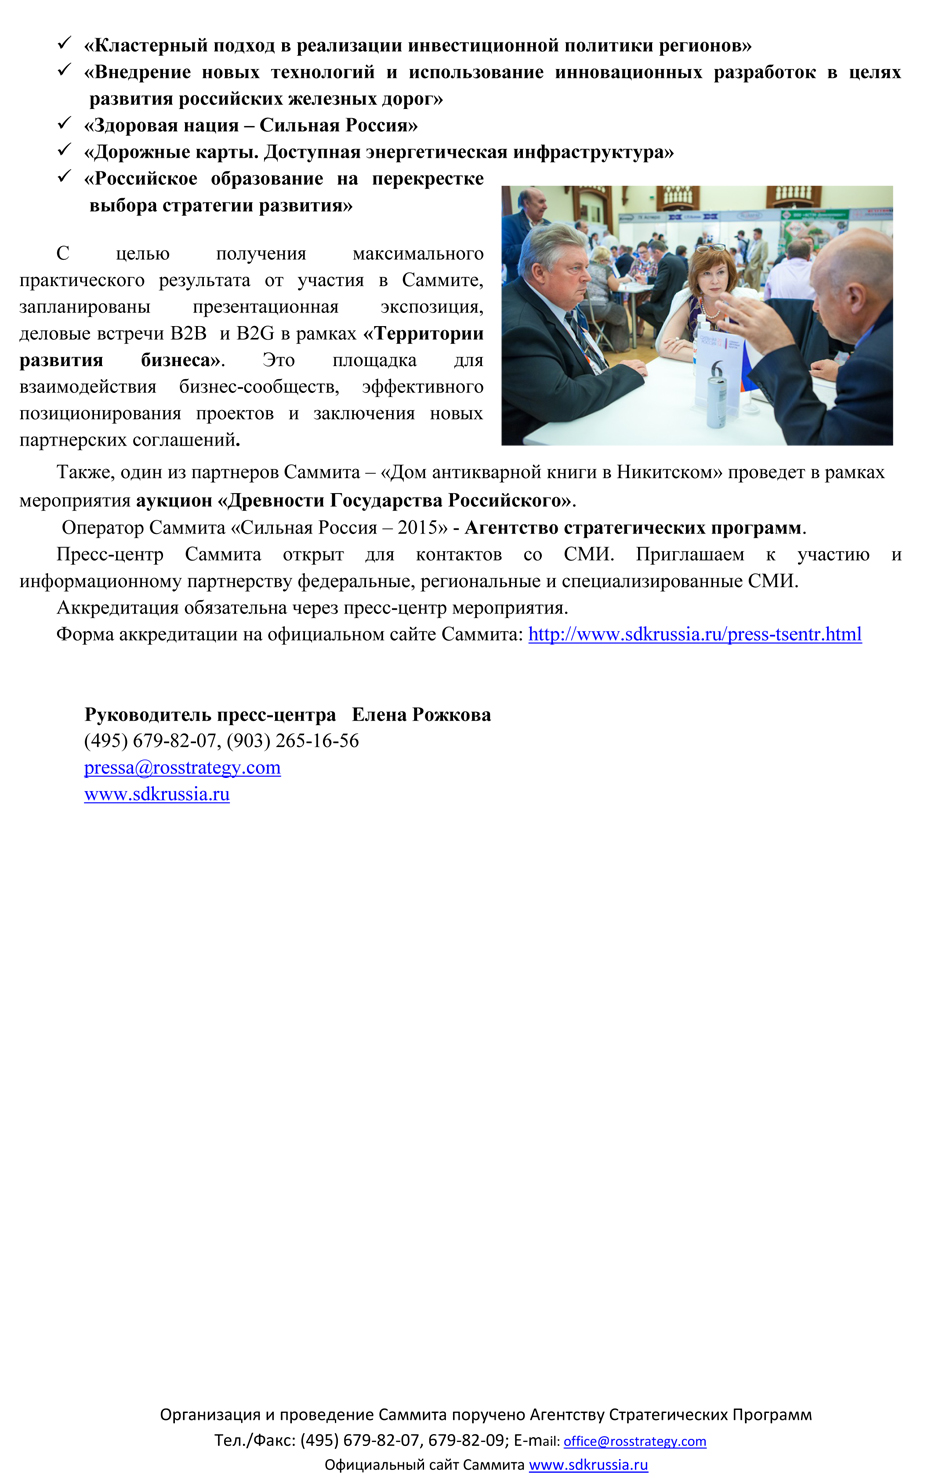 Агентство стратегических программ проведет  Саммит деловых кругов «Сильная Россия – 2015» - фото 3